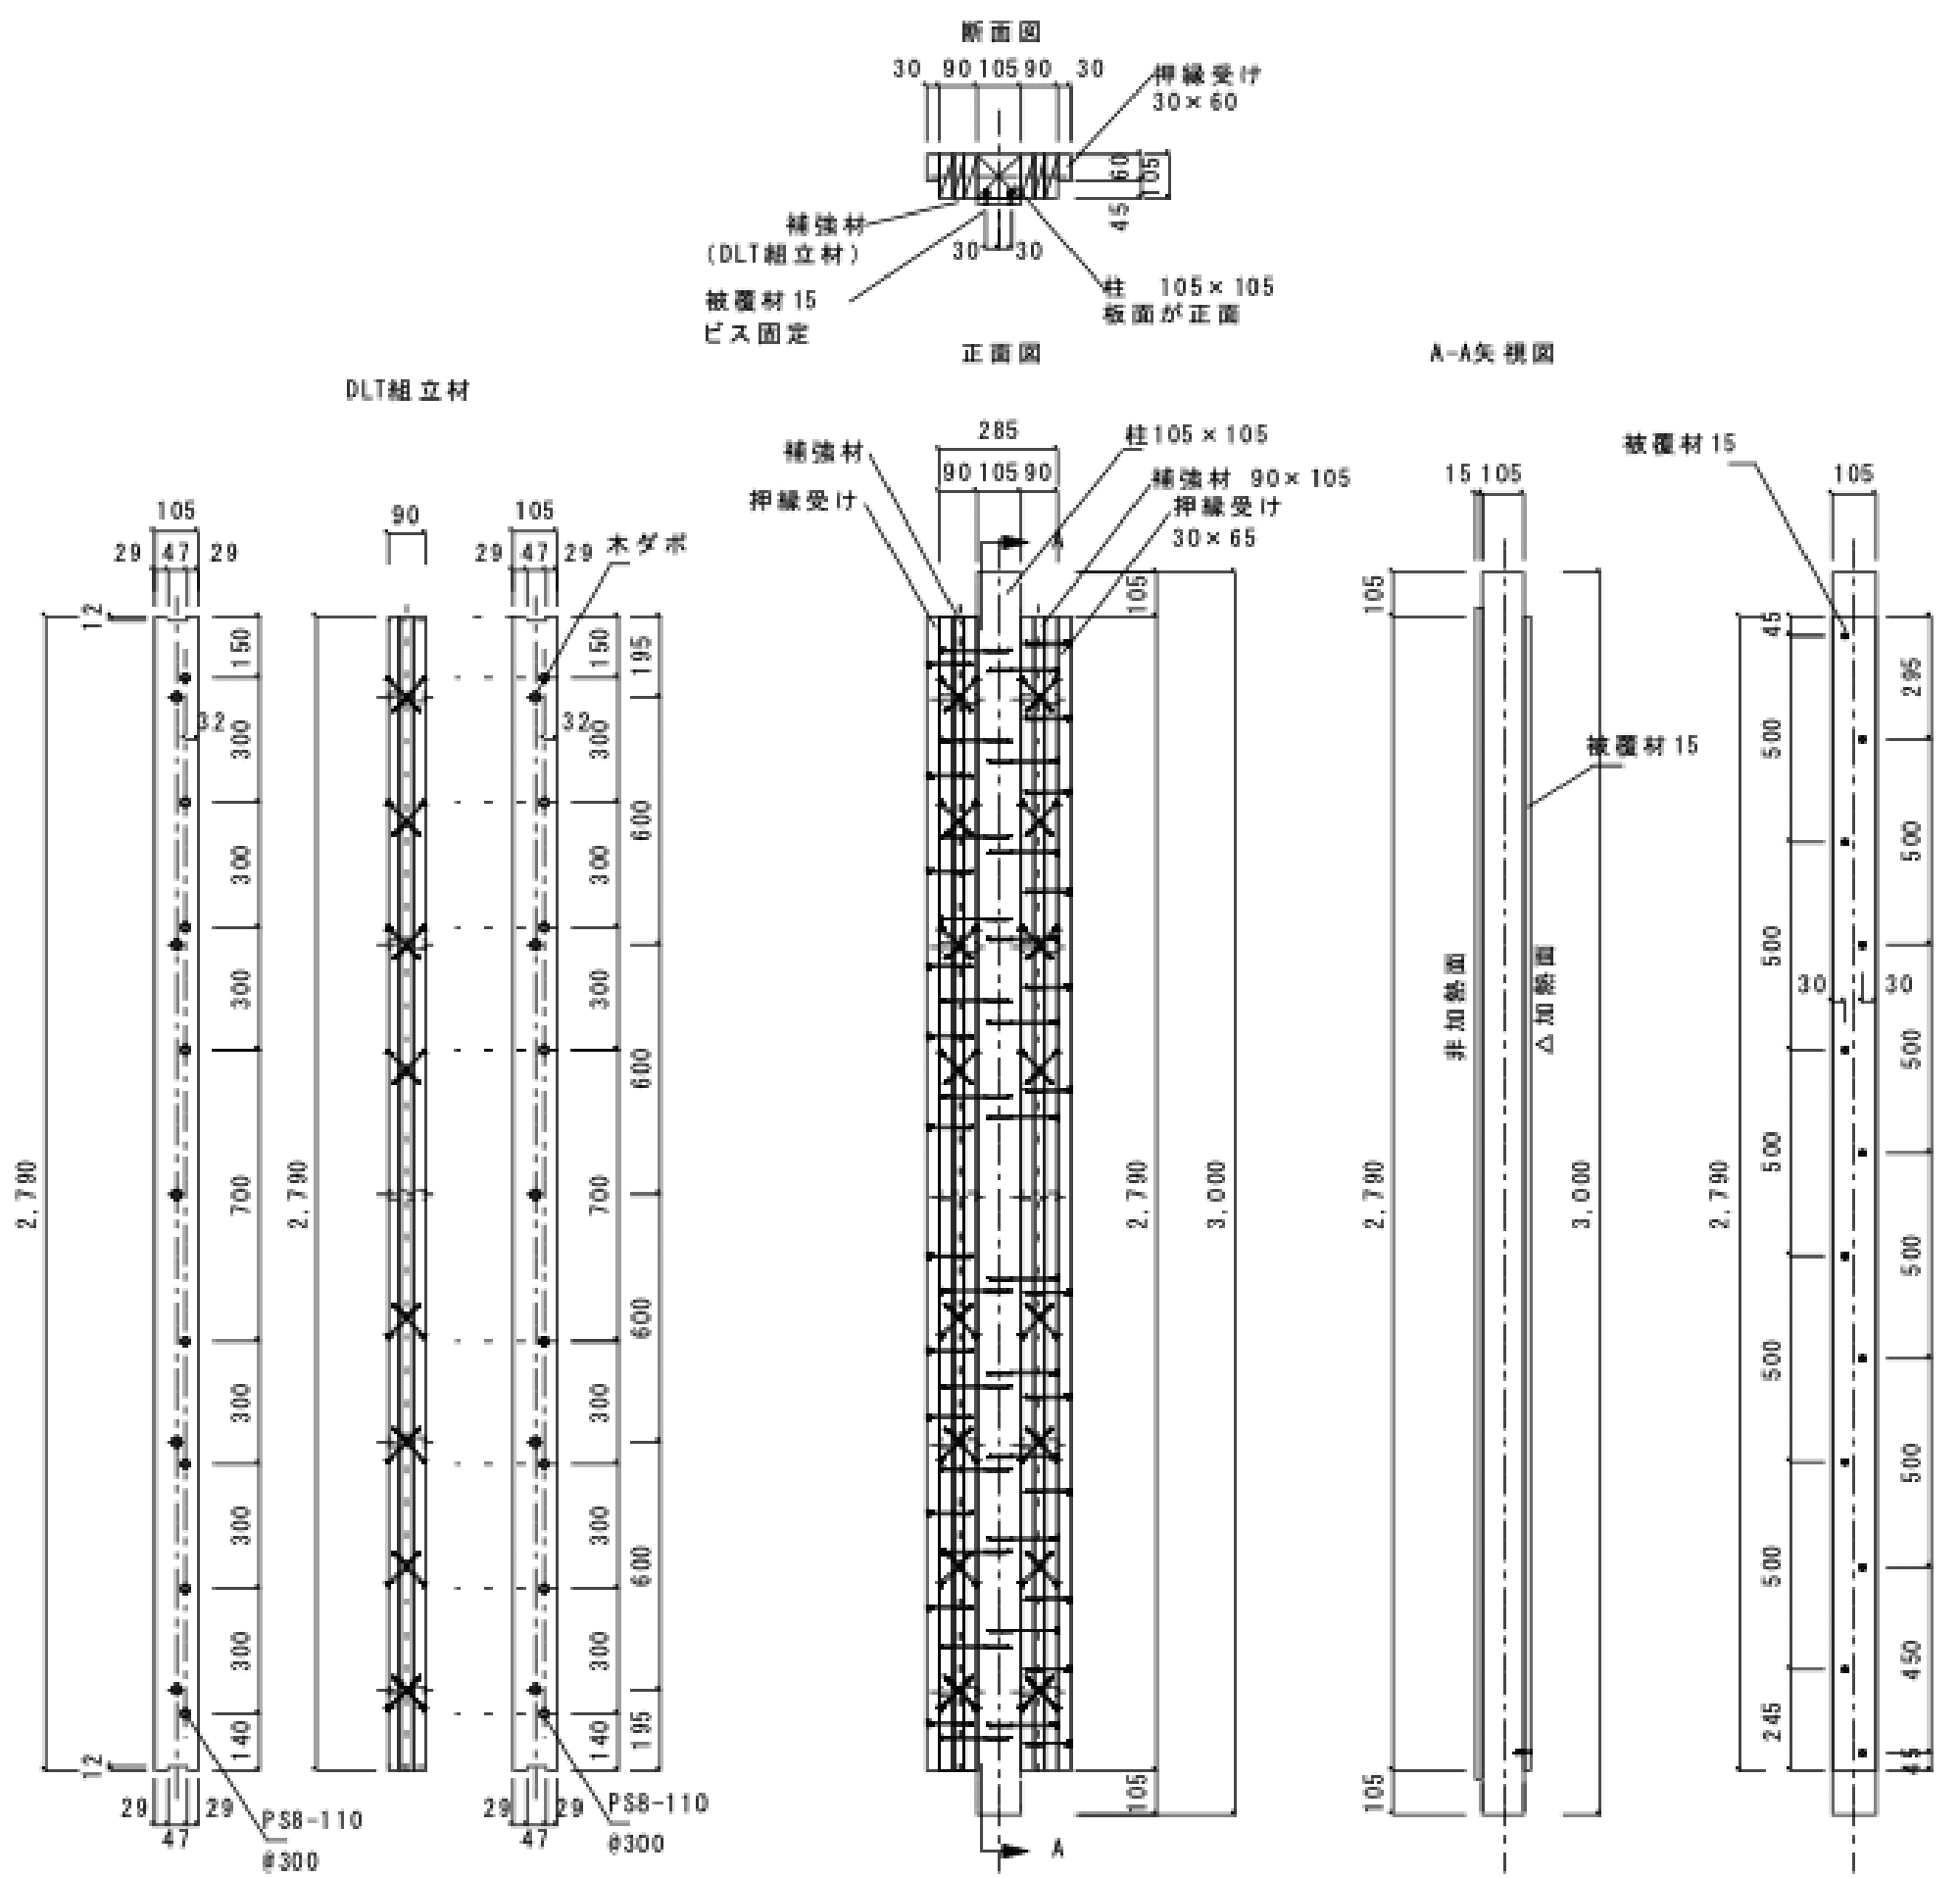 図7 柱および補強DLT